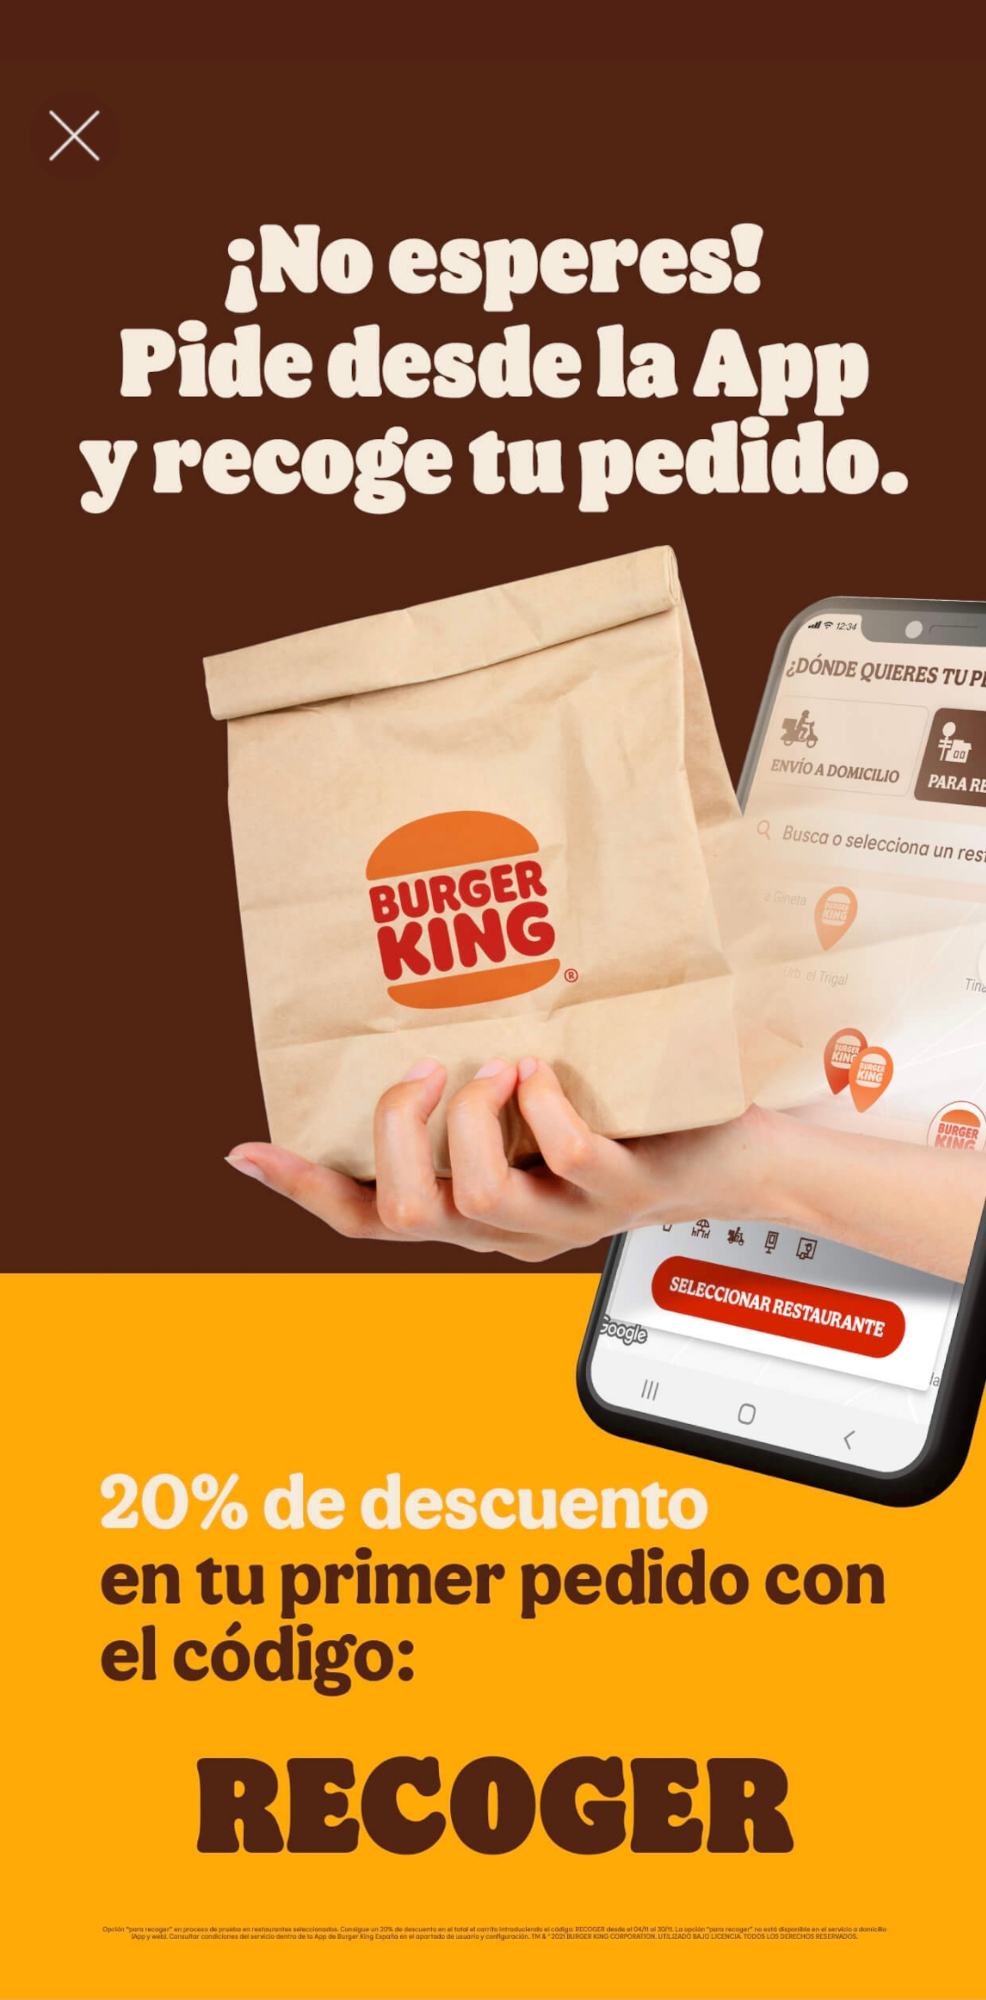 20% de descuento en un primer pedido a recoger en la App de Burger King